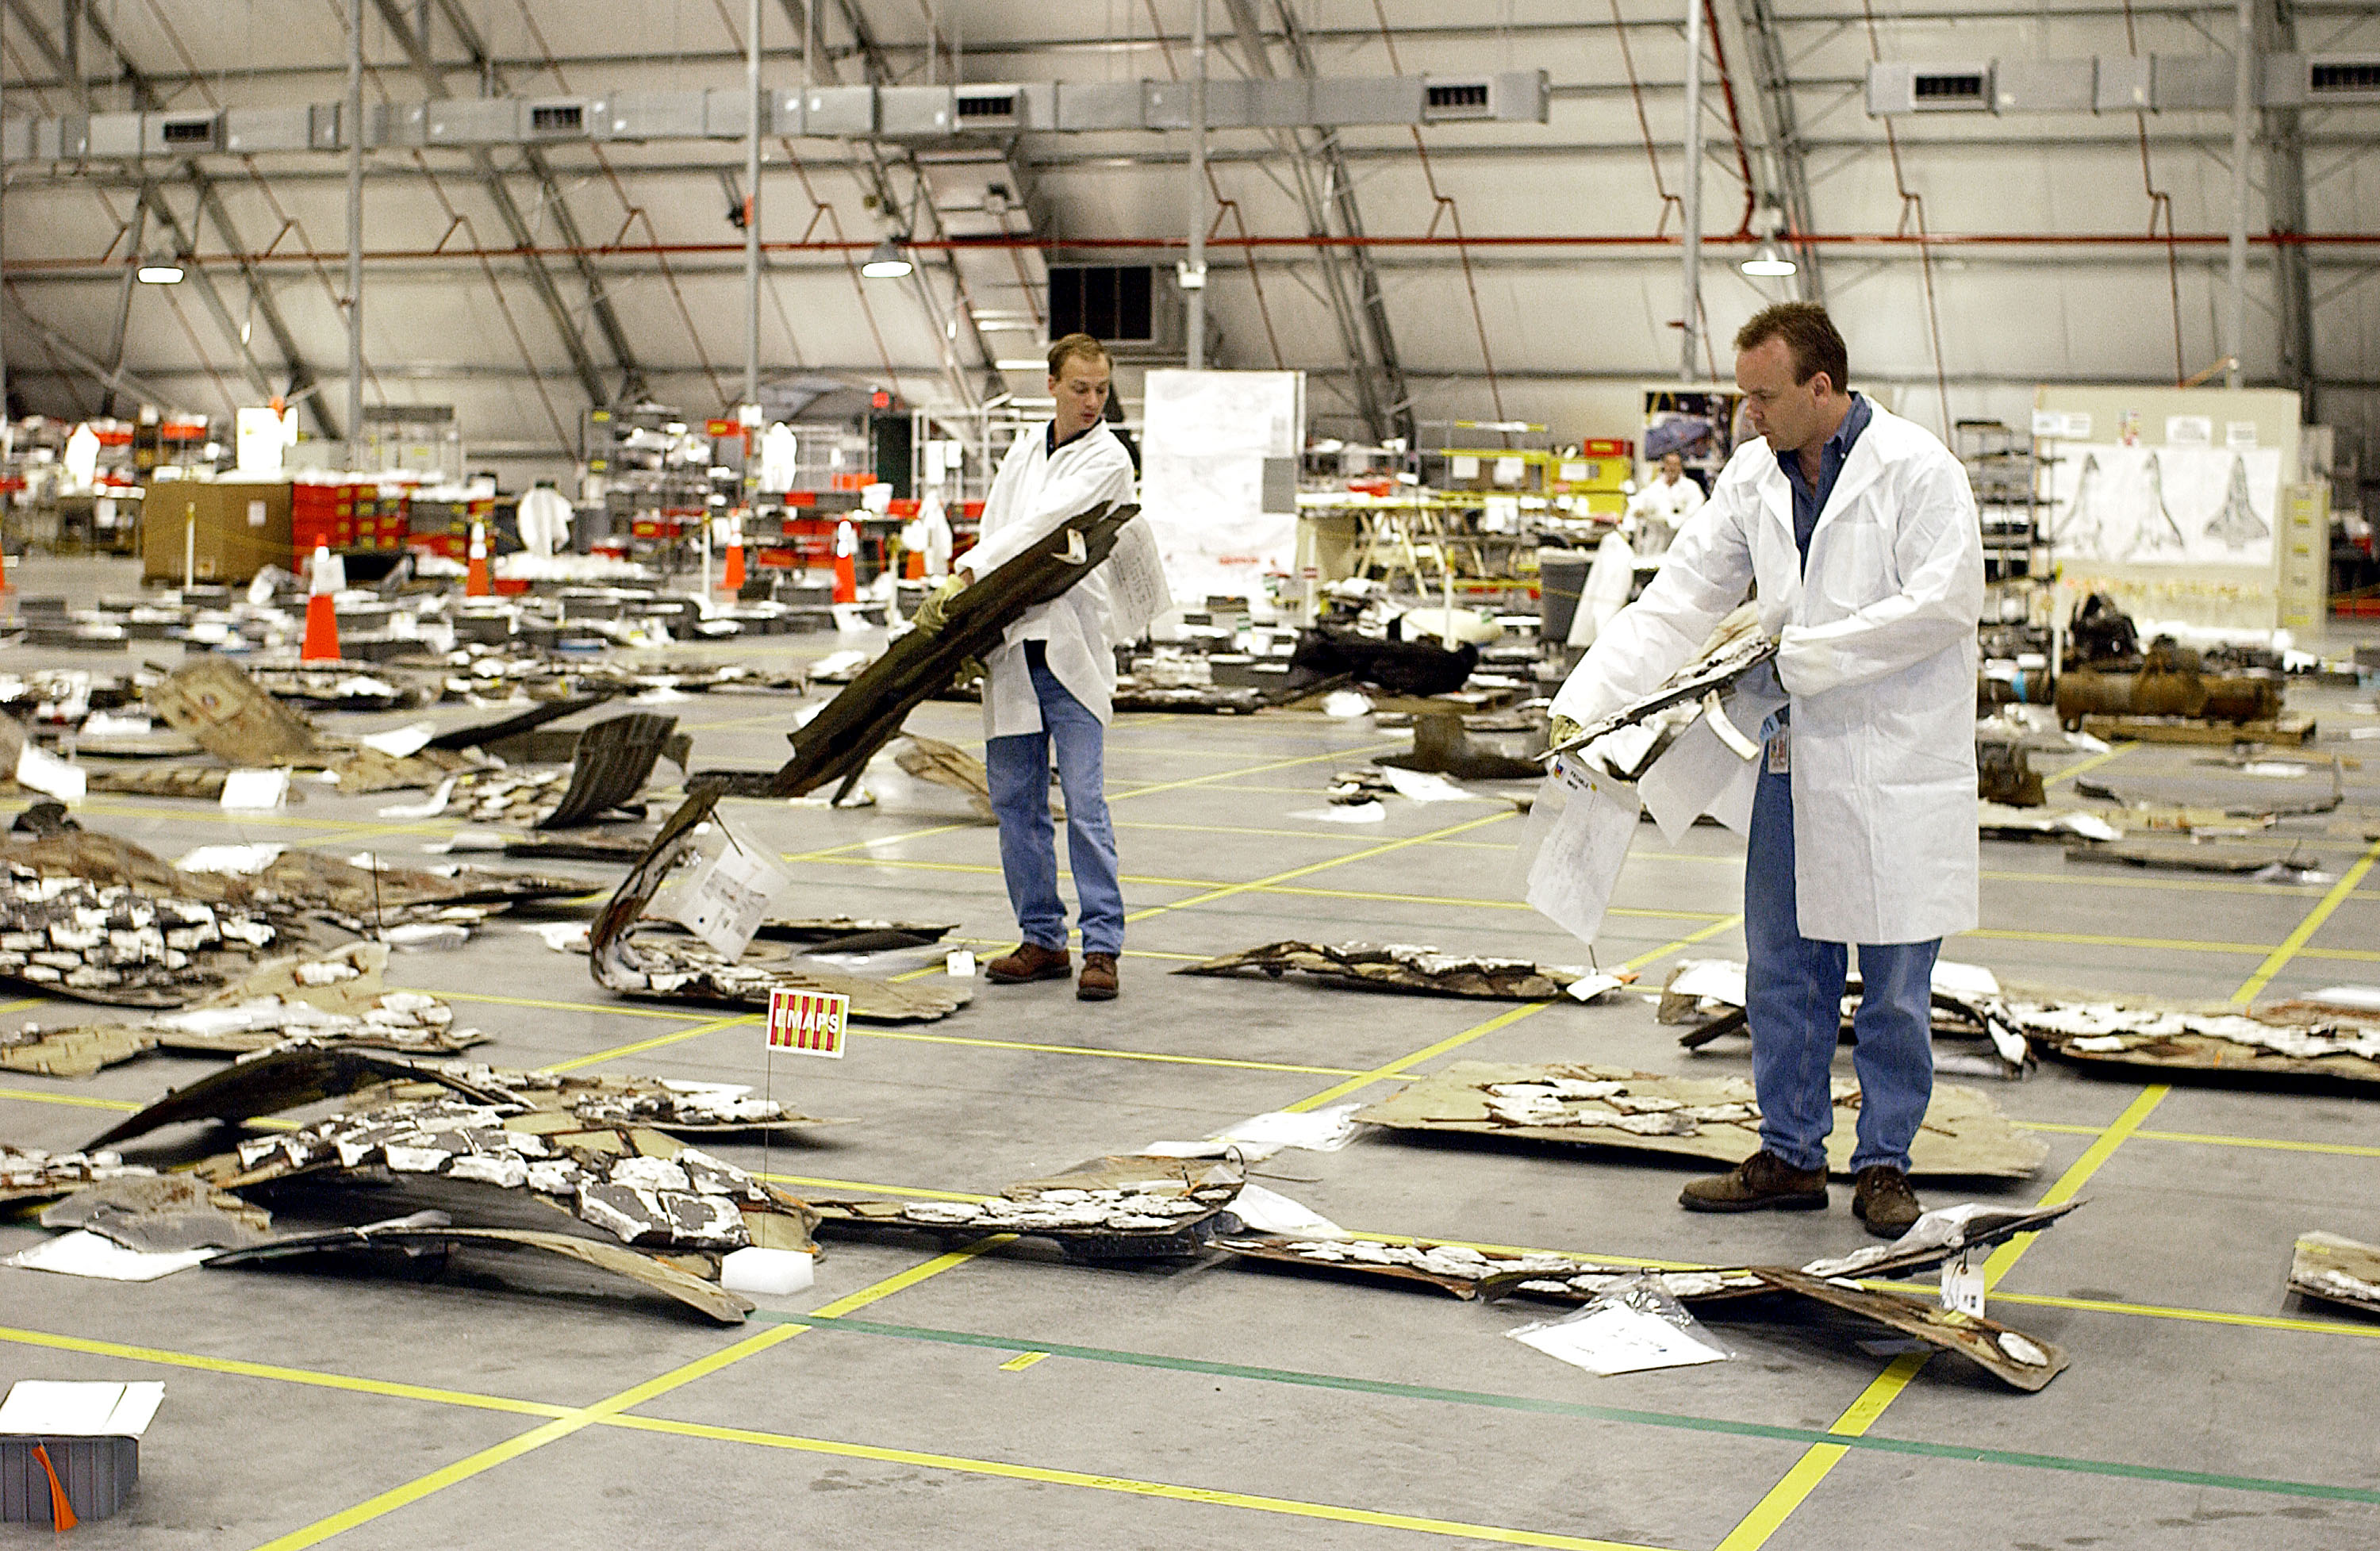 Обломки &laquo;Колумбии&raquo; сортируются на складе и раскладываются в модель шаттла. Космический центр имени Кеннеди, Флорида, США. апрель 2003.